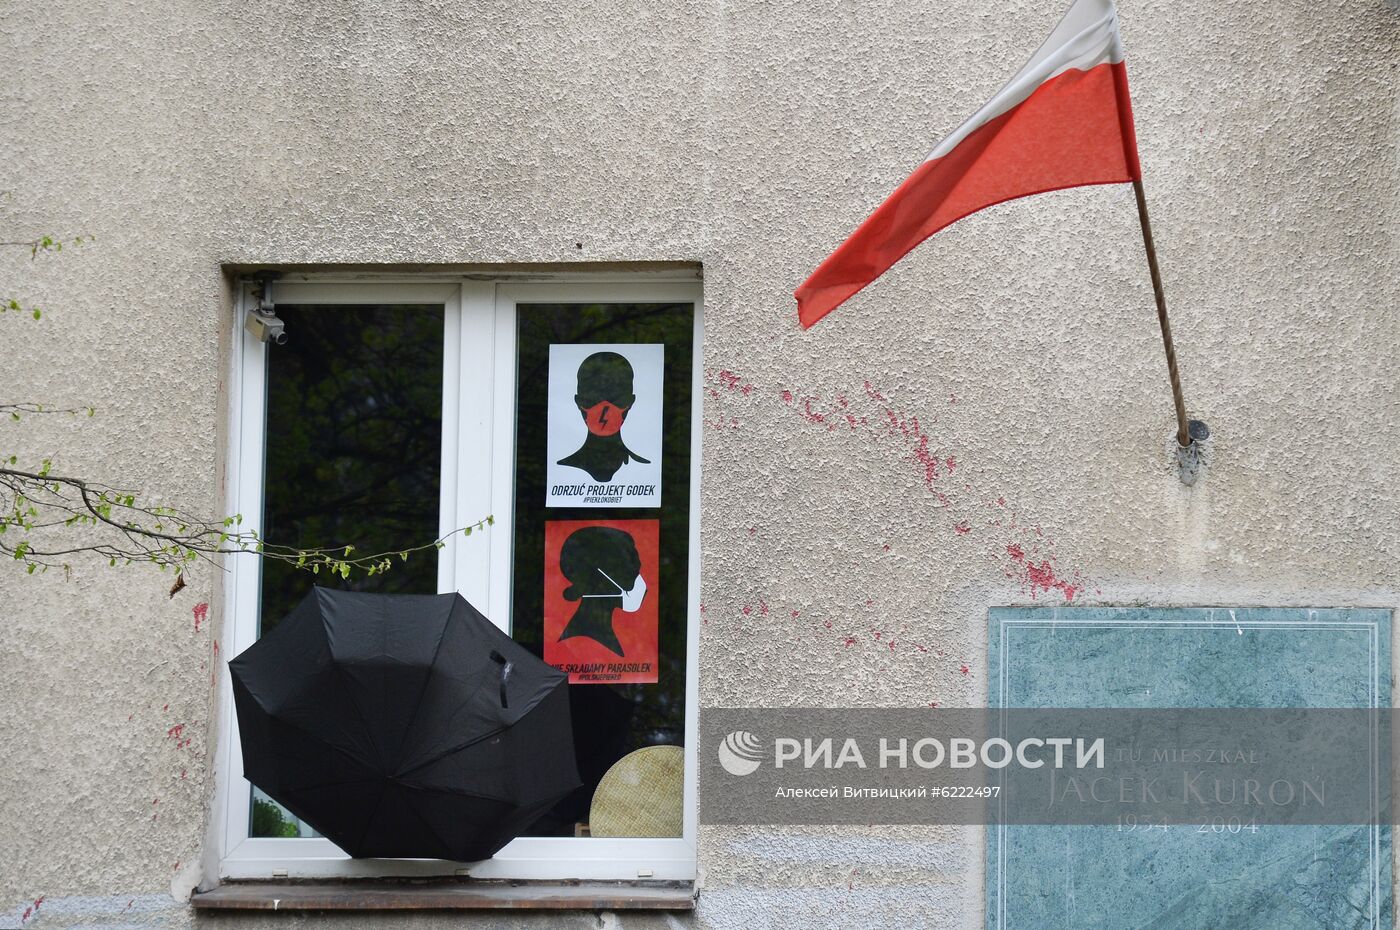 Антиправительственная акция в Варшаве